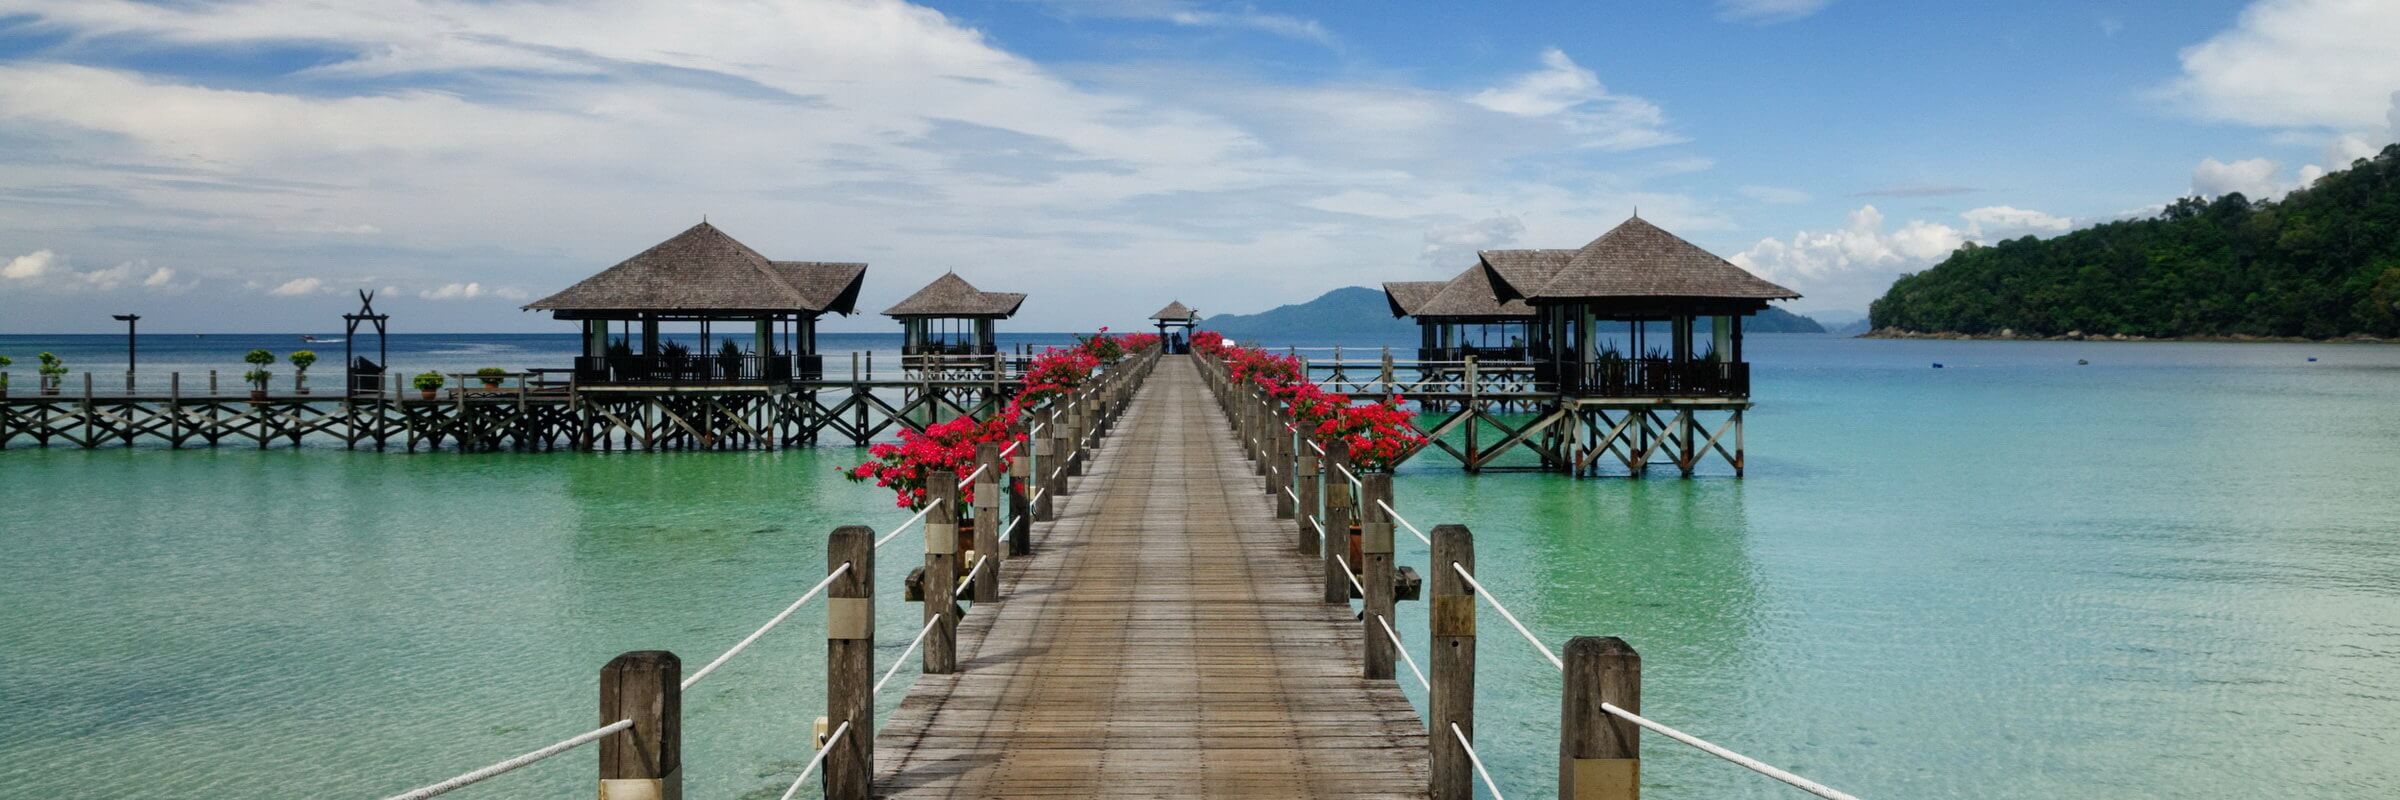 Das Bunga Raya Island Resort & Spa verfügt über mehrere, auf Stelzen gebaute Pavillions, die über Stege miteinander verbunden sind.